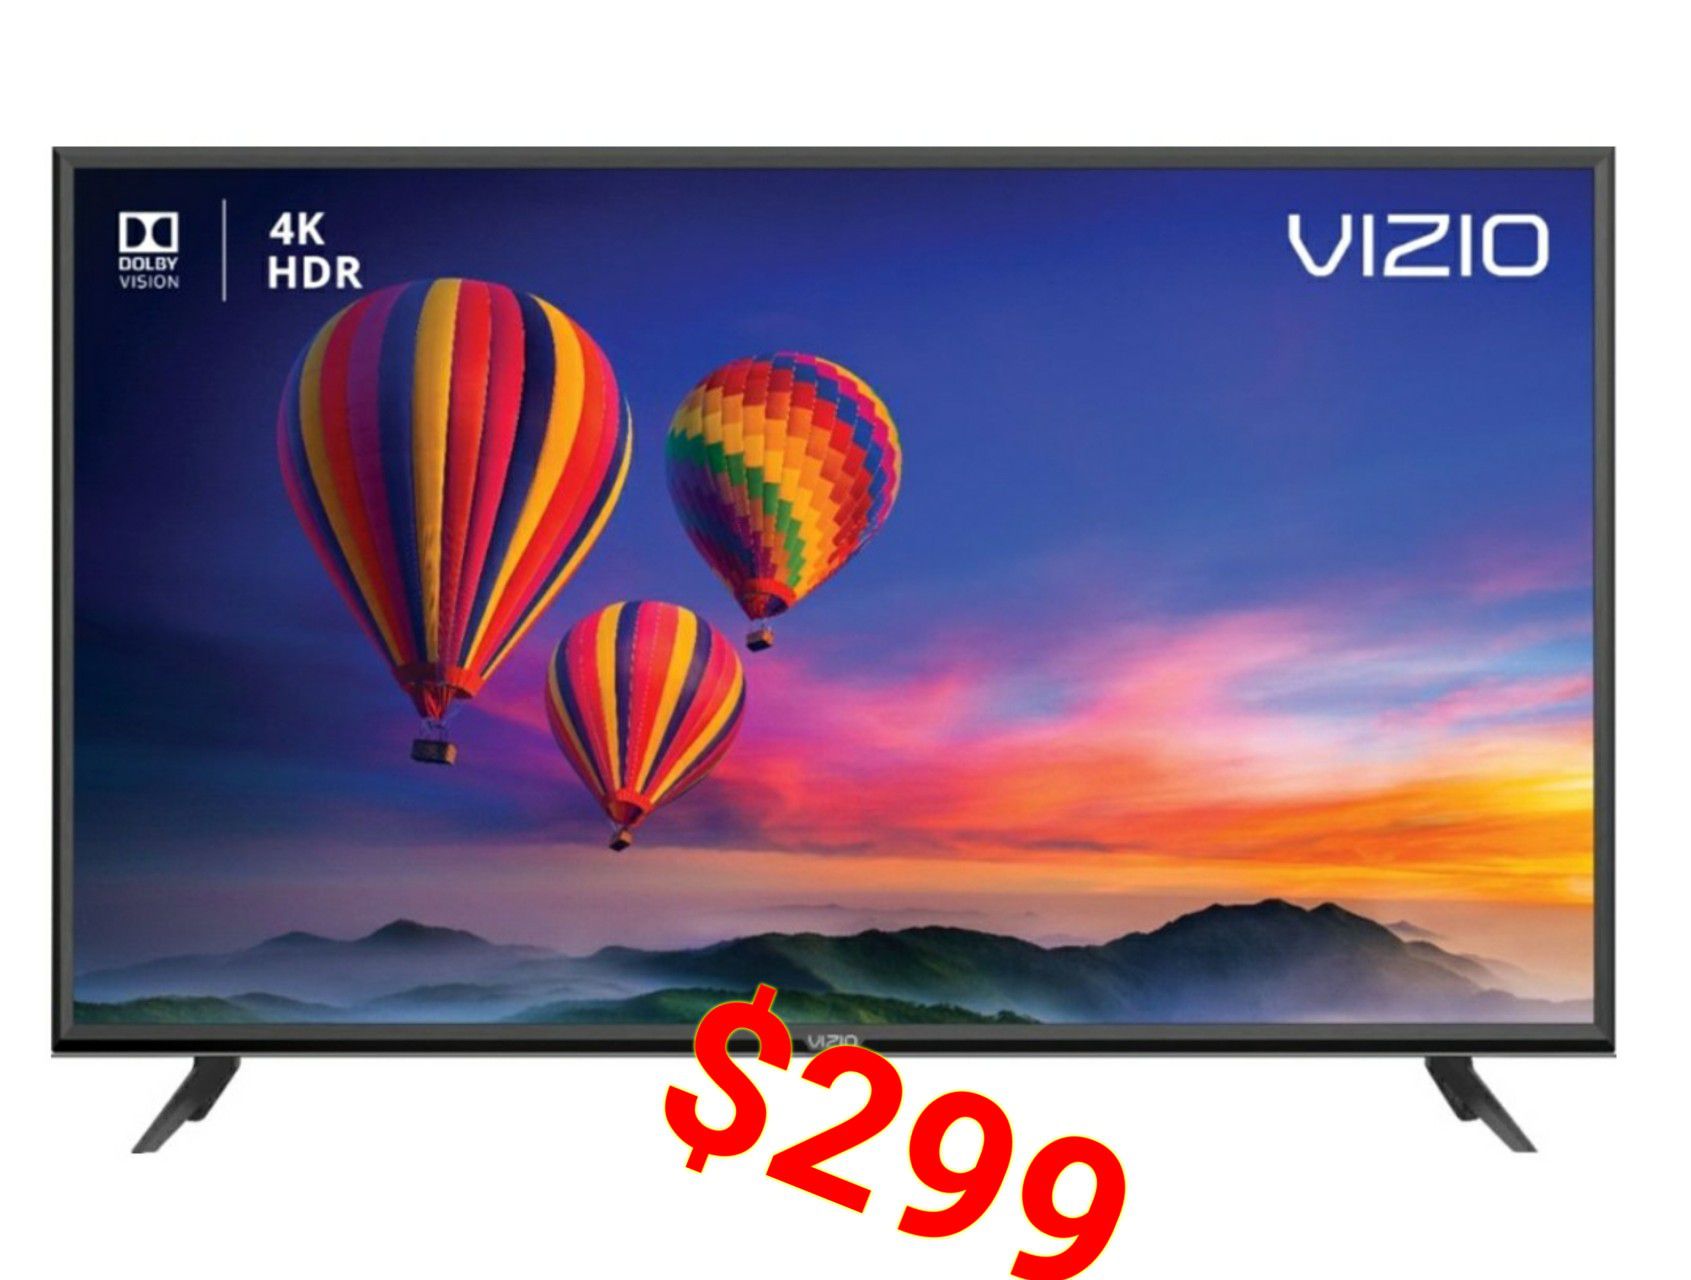 55" Vizio Ultra 4k smart TV E-Series 30 days warranty